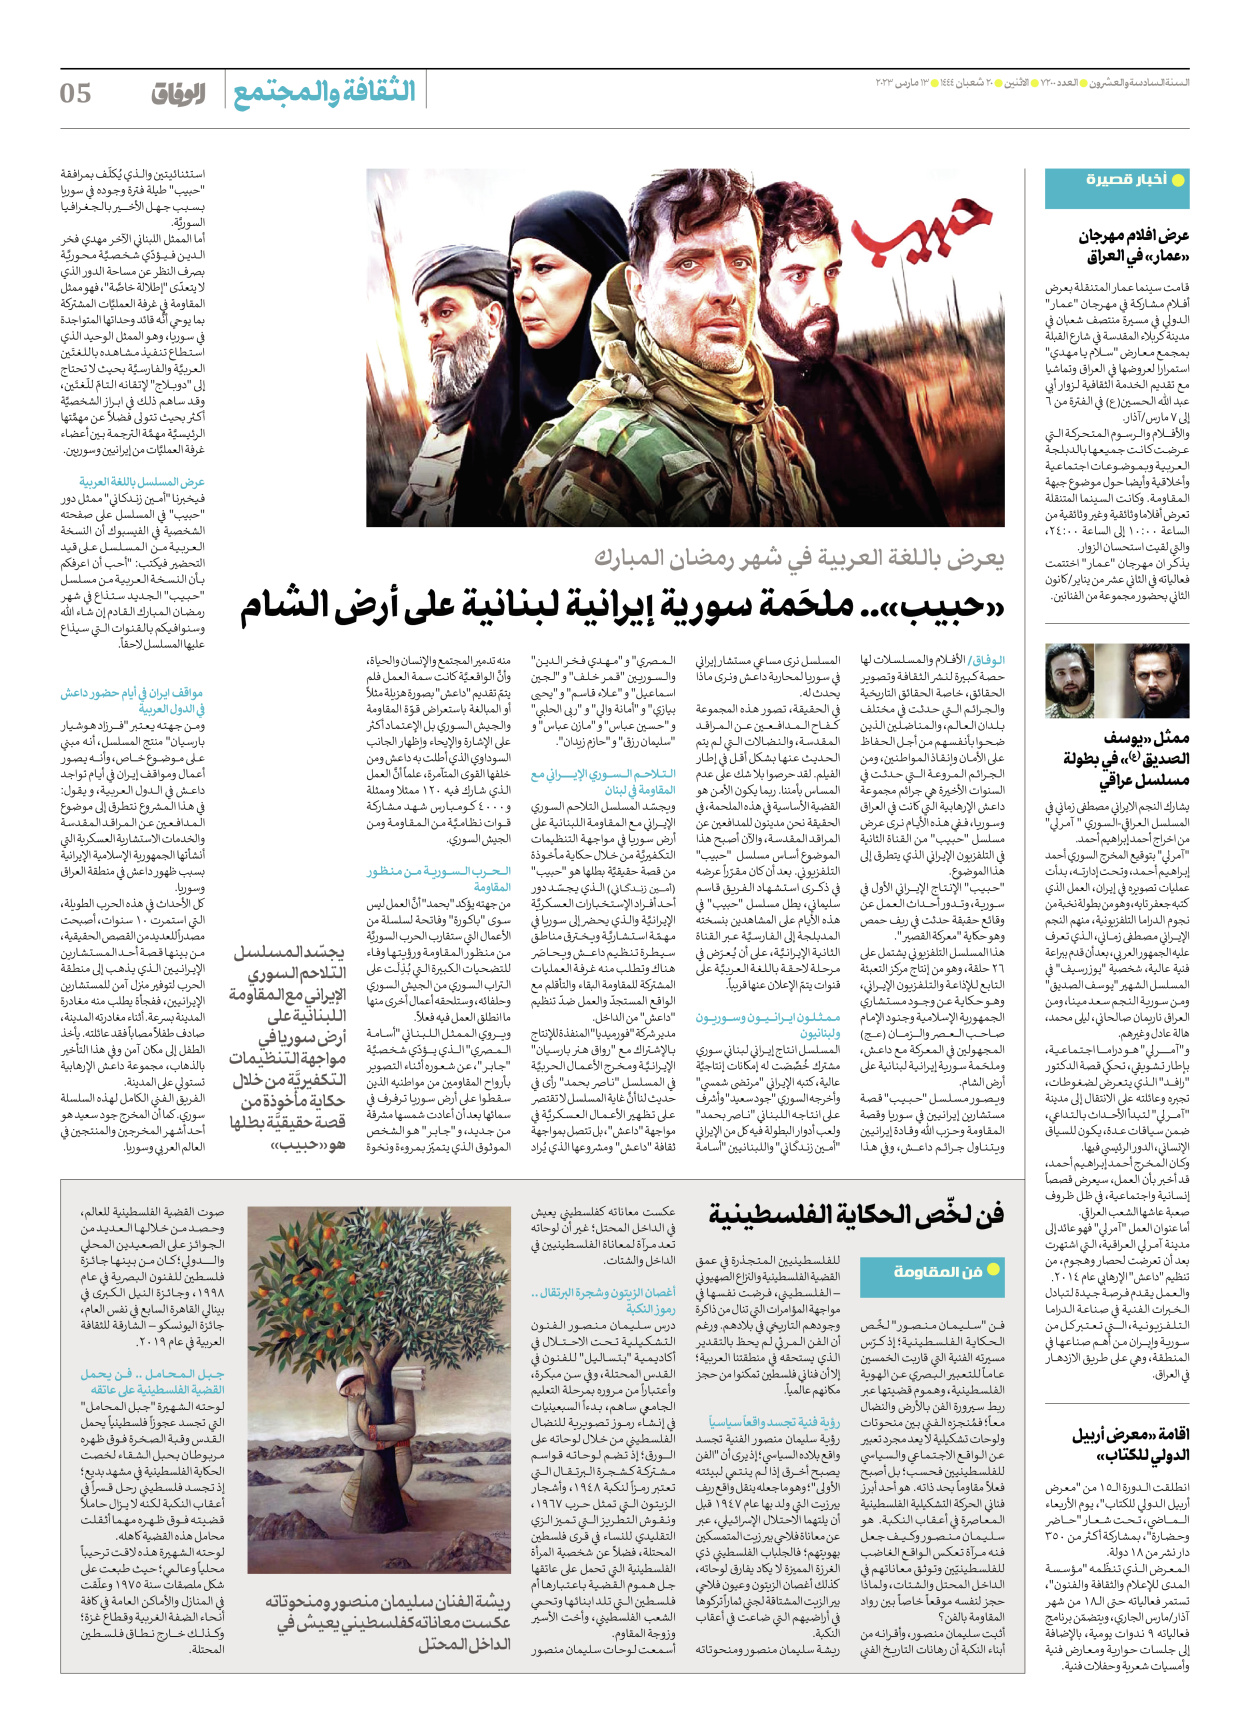 صحیفة ایران الدولیة الوفاق - العدد سبعة آلاف ومائتان - ١٣ مارس ٢٠٢٣ - الصفحة ٥